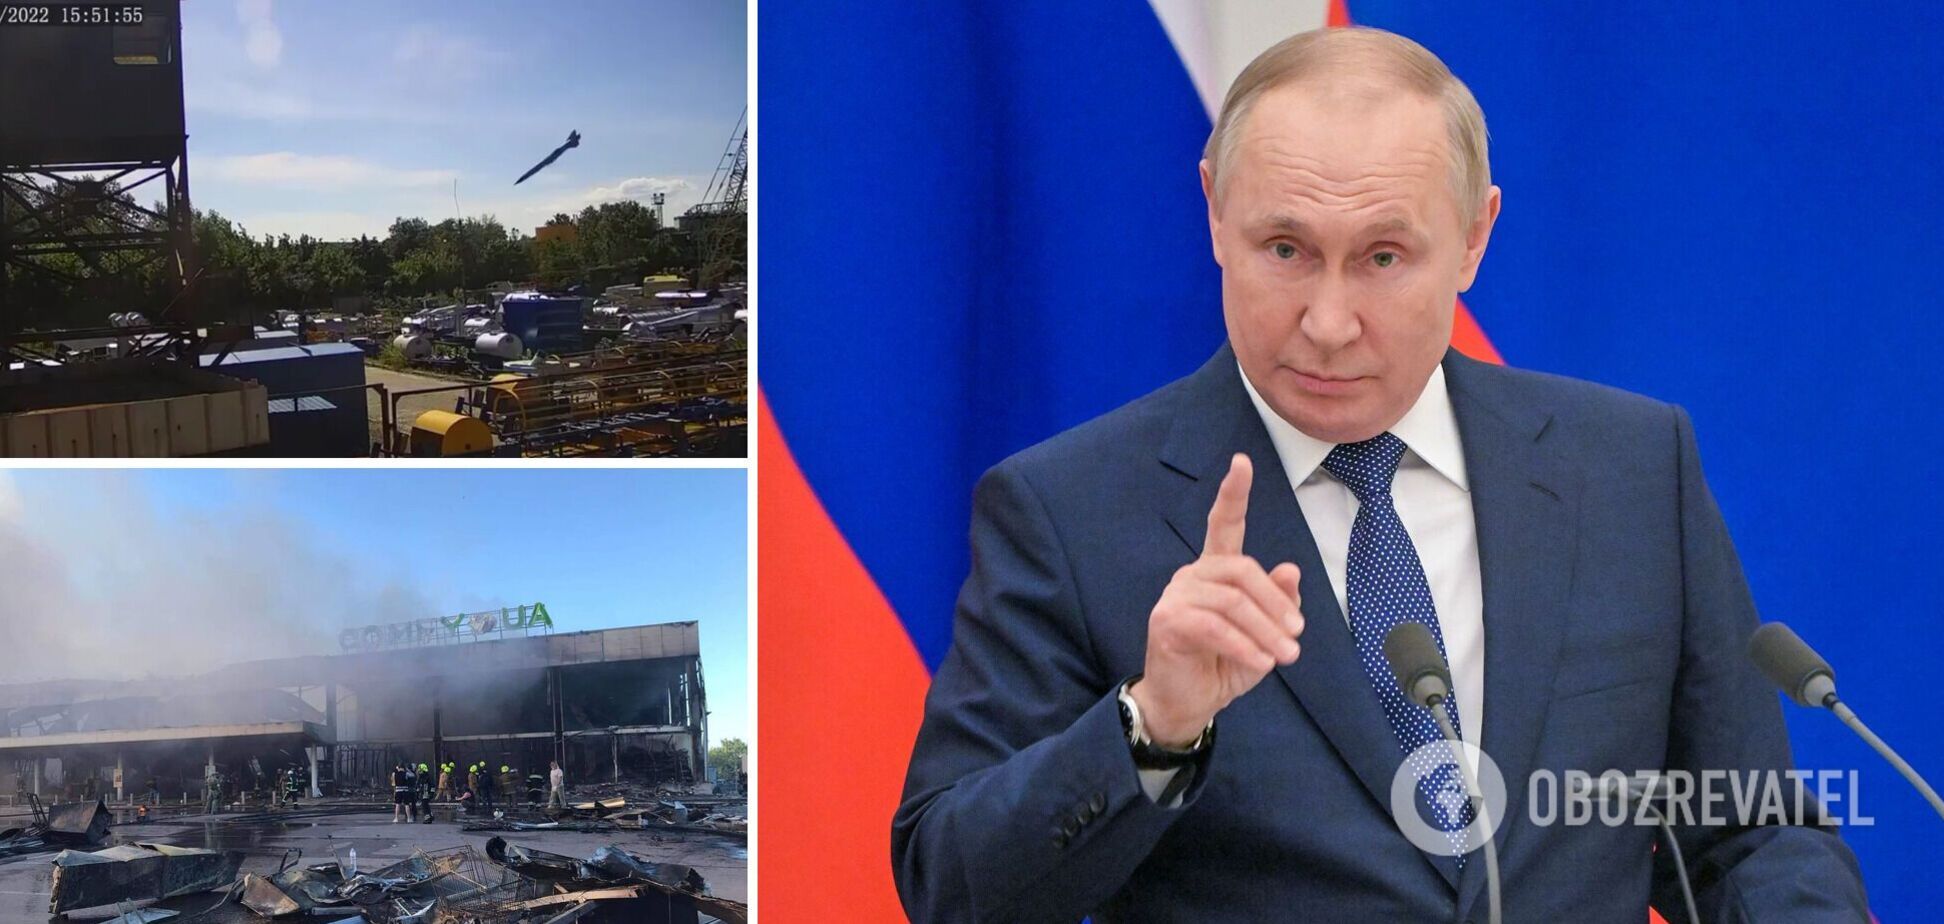 Путін: теракту у Кременчуці не було, армія РФ не б'є по цивільних об'єктах